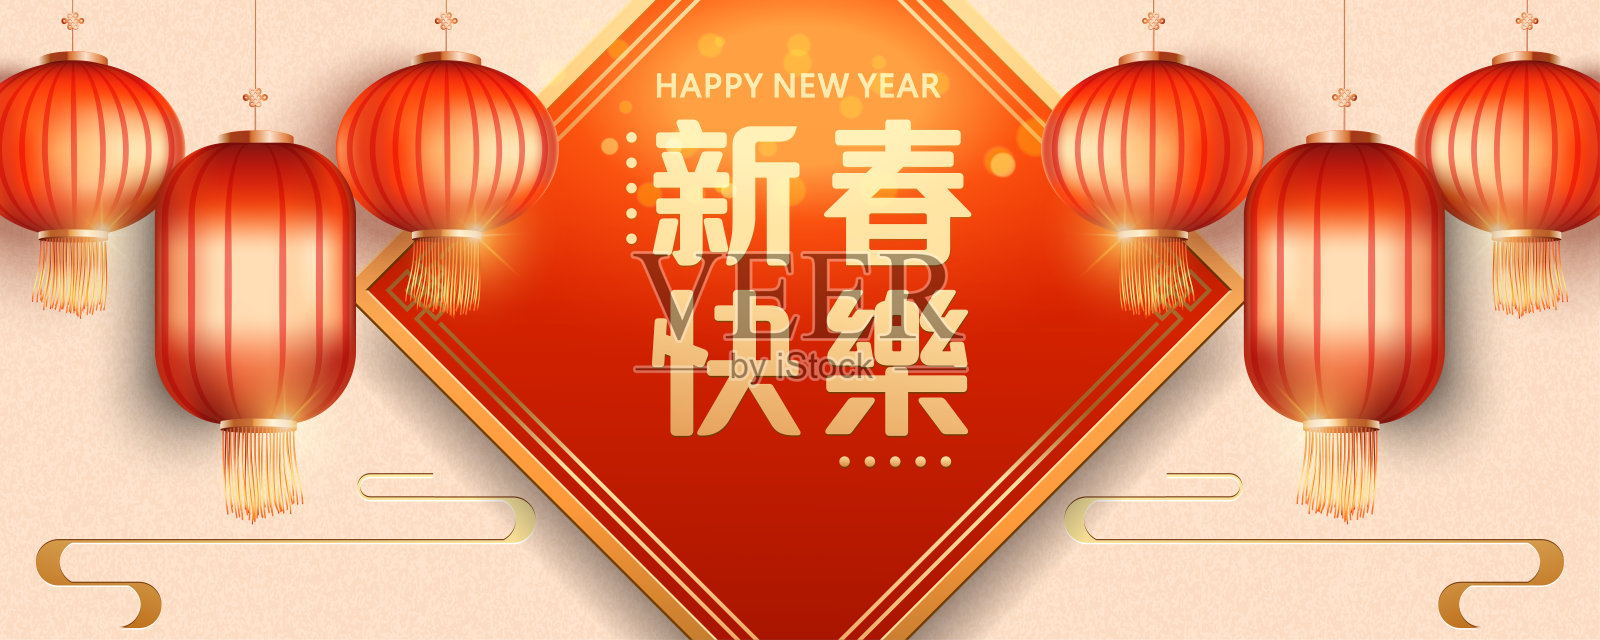 农历新年的横幅用纸艺术风格的灯笼，春节的字写在春联上。新年快乐背景插图设计模板素材